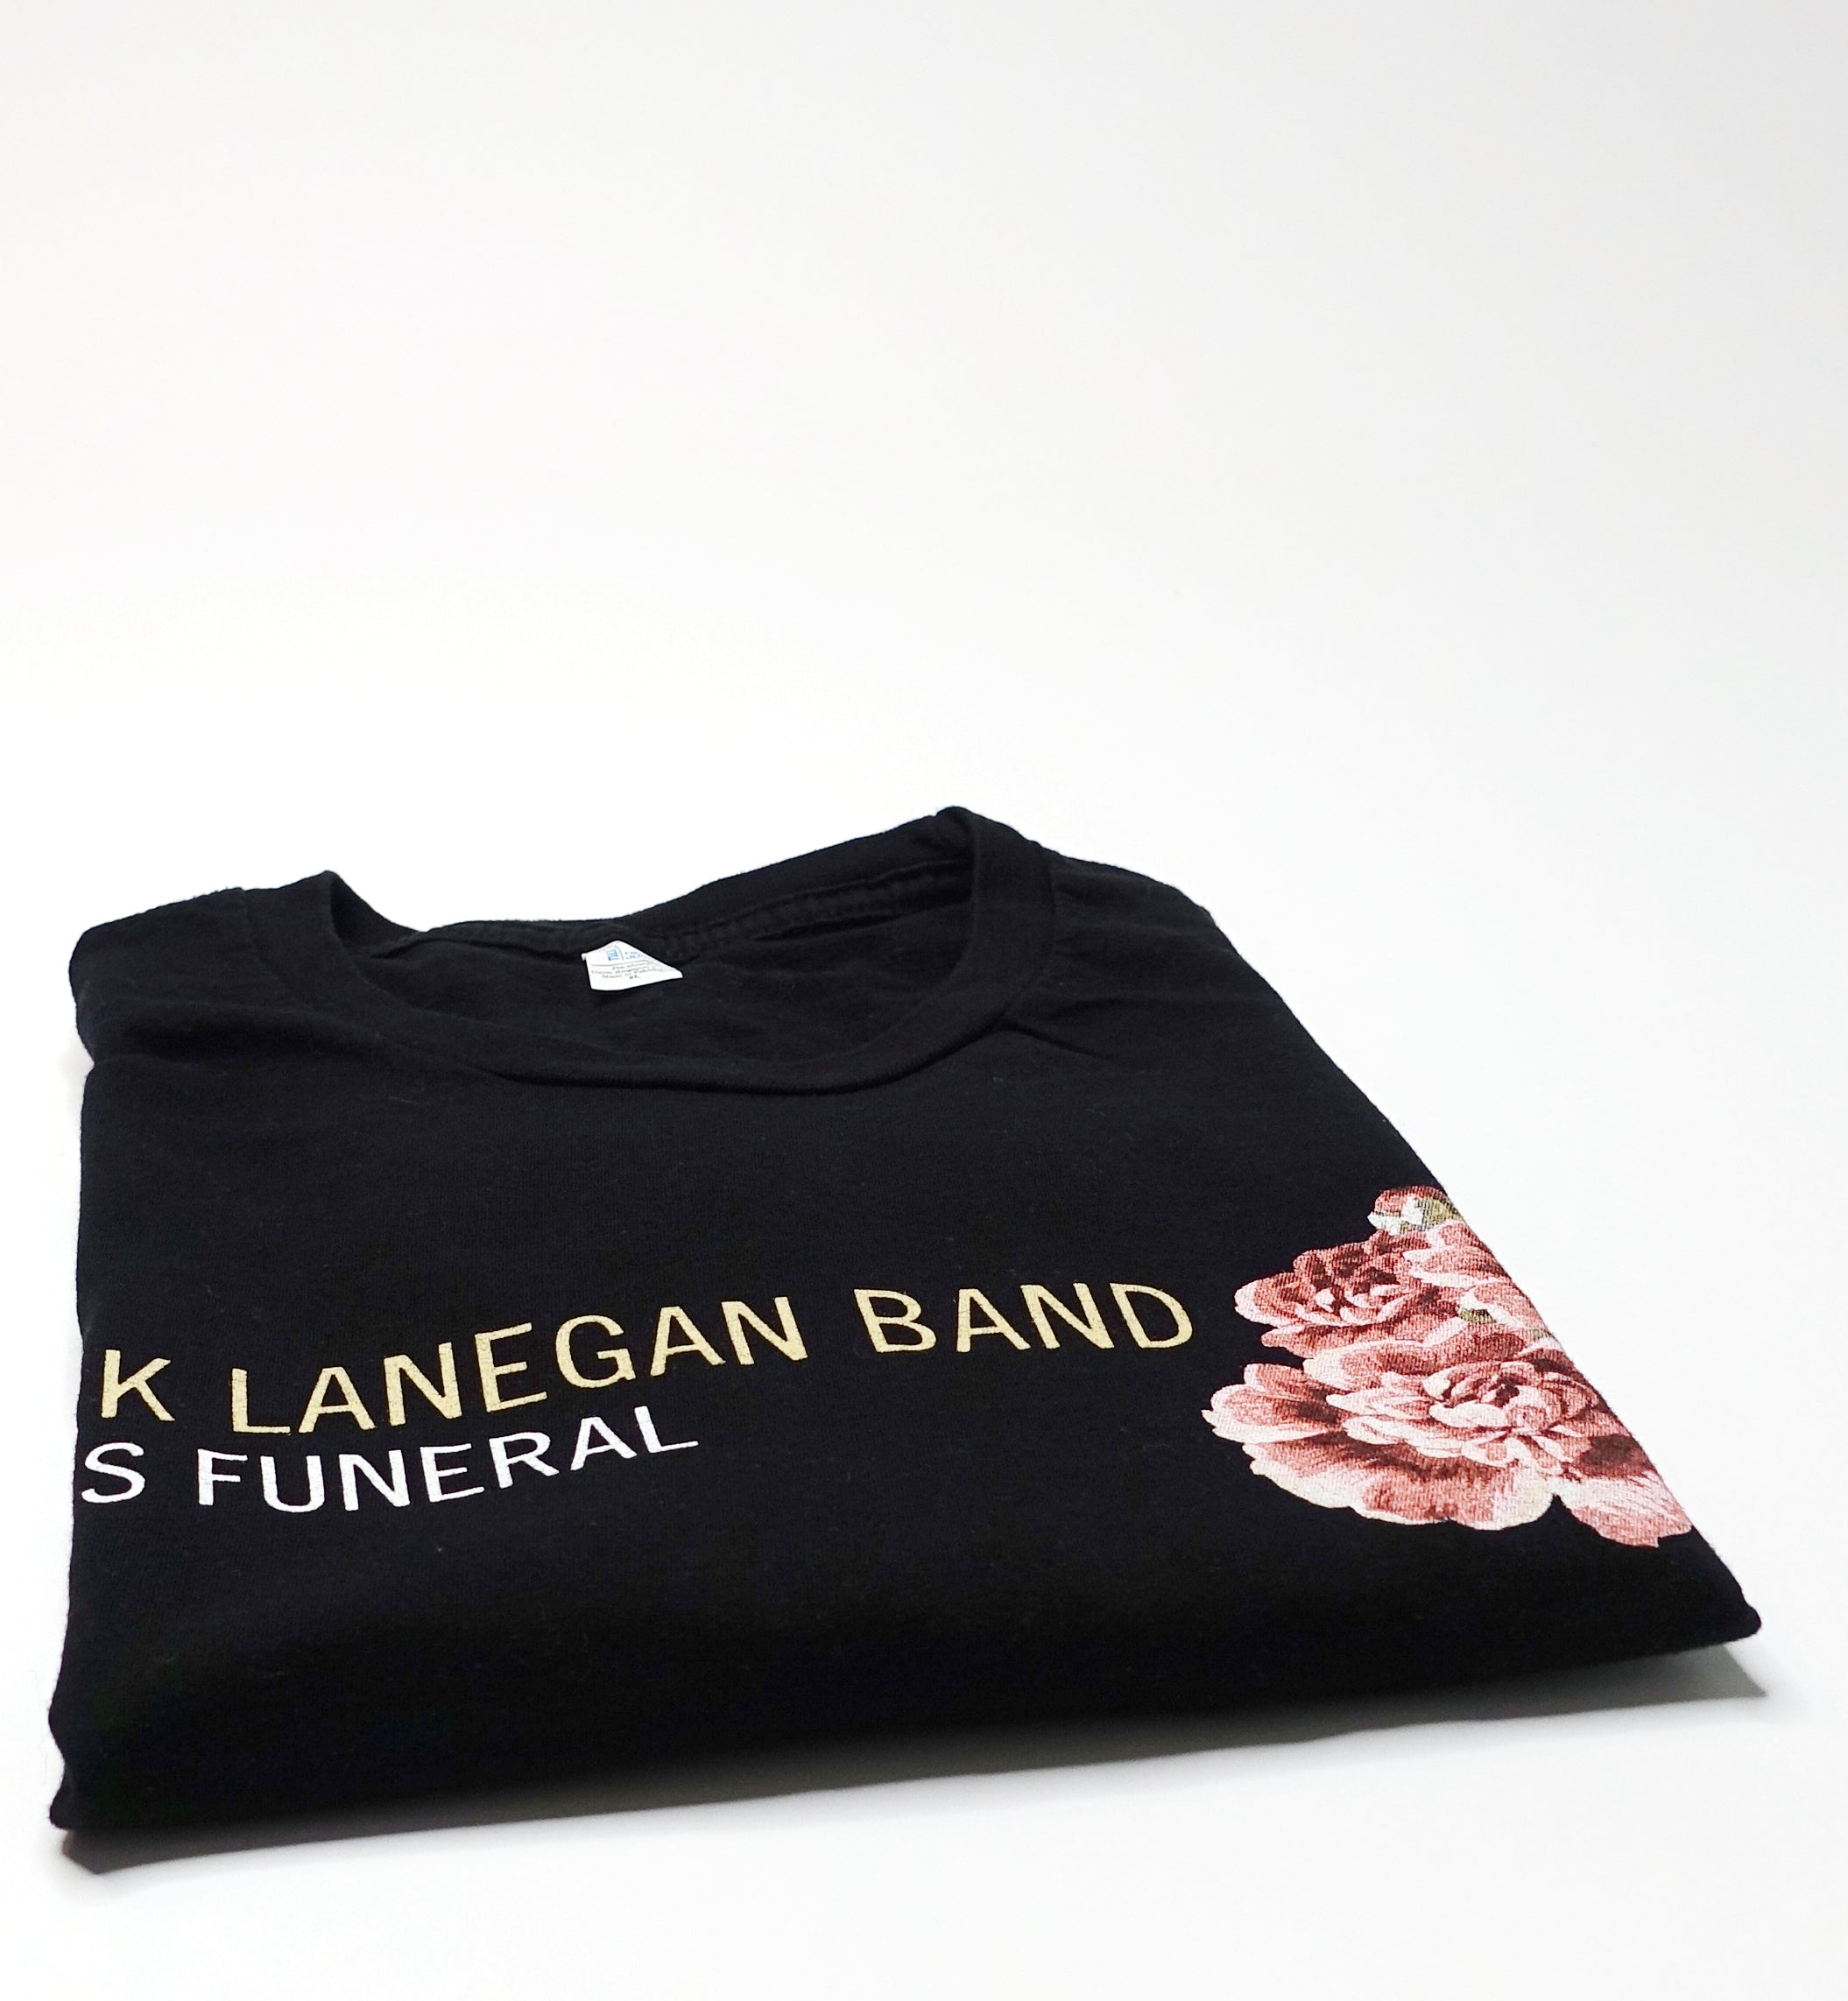 Mark Lanegan ‎– Blues Funeral 2012 Tour Shirt Size XL